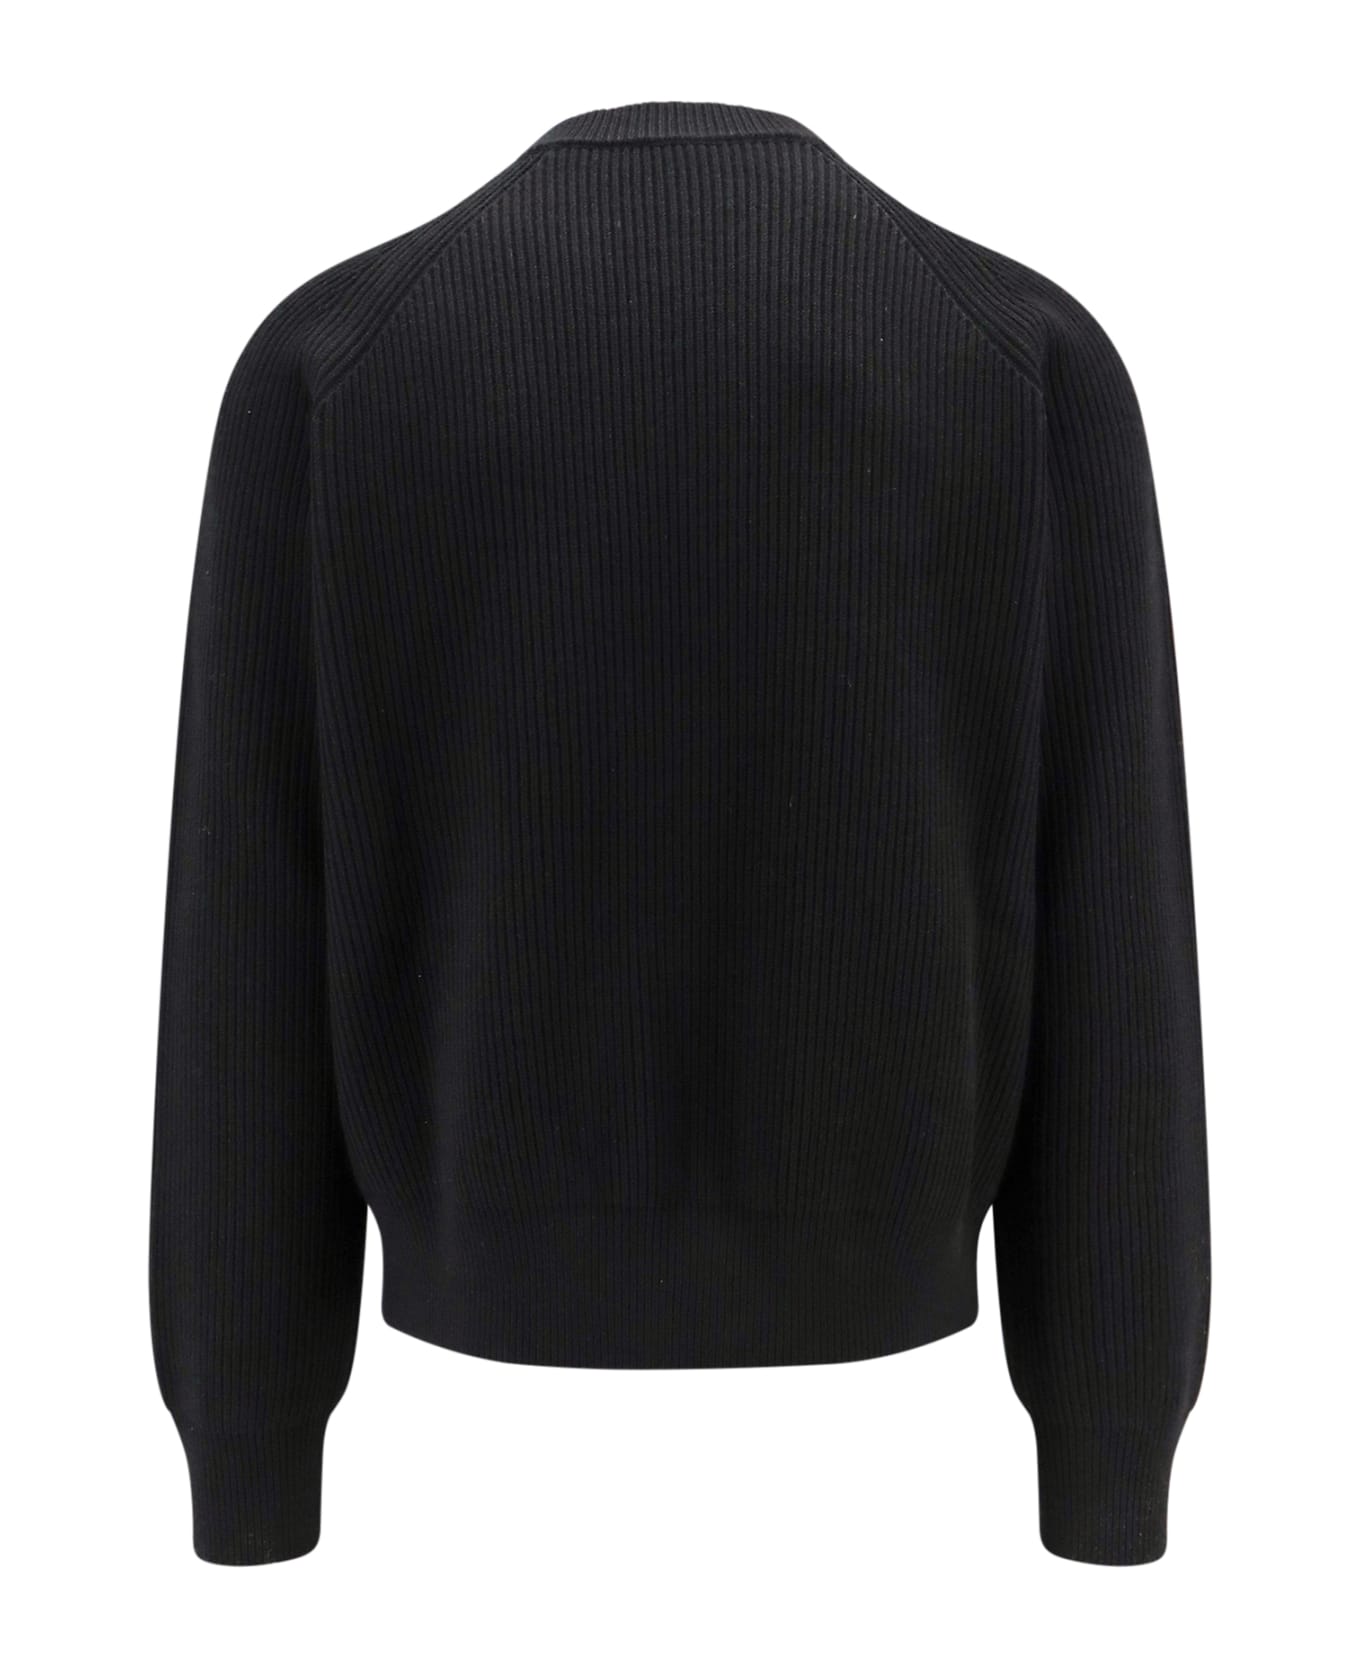 Burberry Sweater - Black ニットウェア